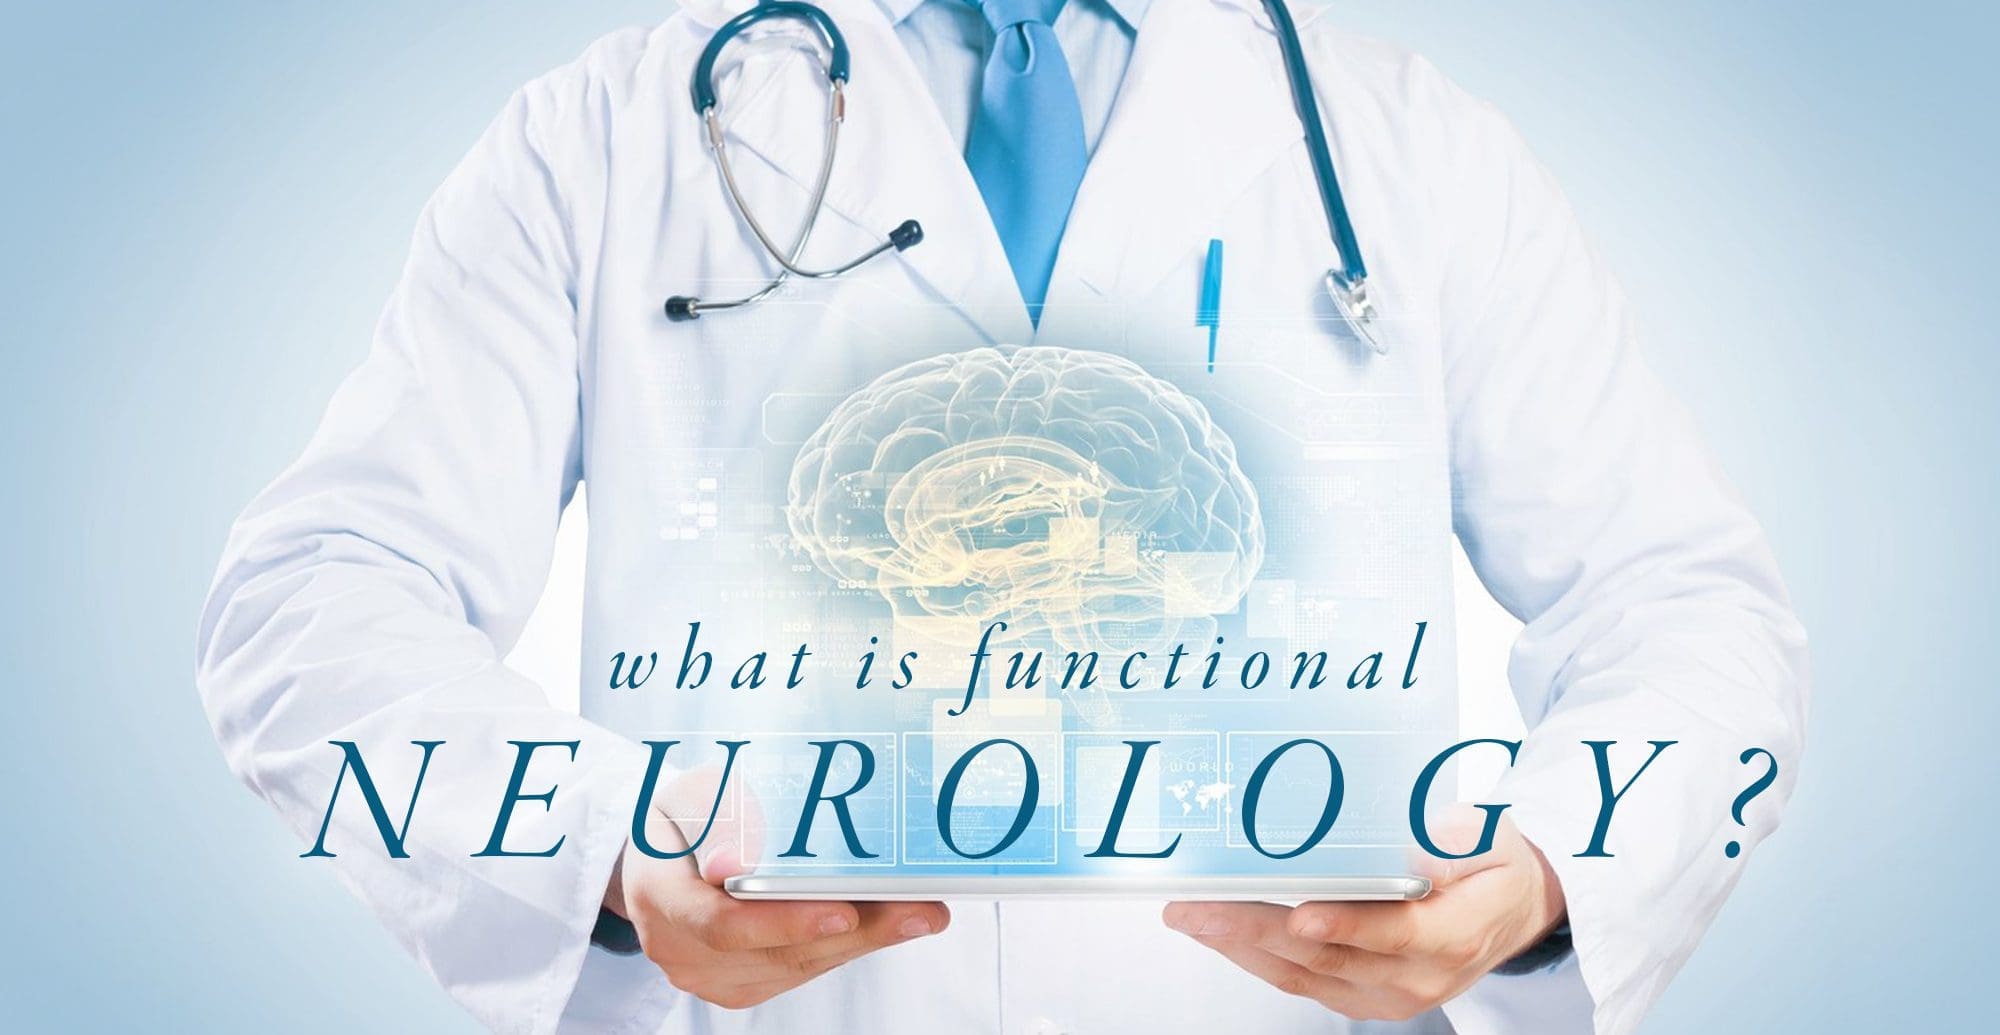 O que é a neurologia funcional? | El Paso, TX Chiropractor